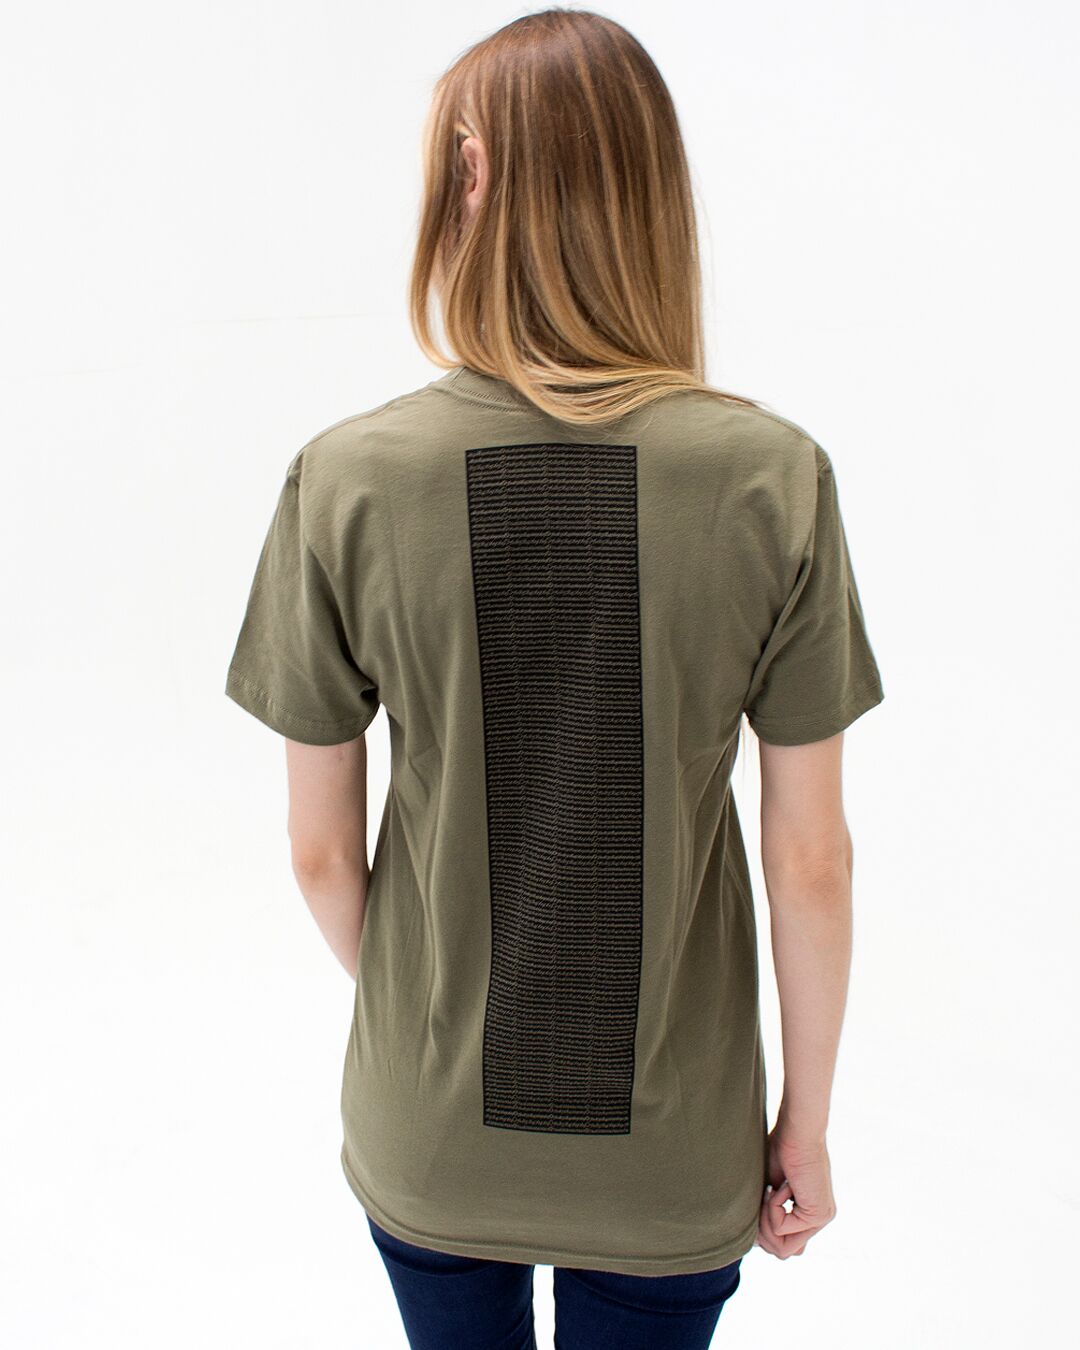 t. Weeyn Backbone Steel in ASCII code women's army green short sleeve t shirt back view